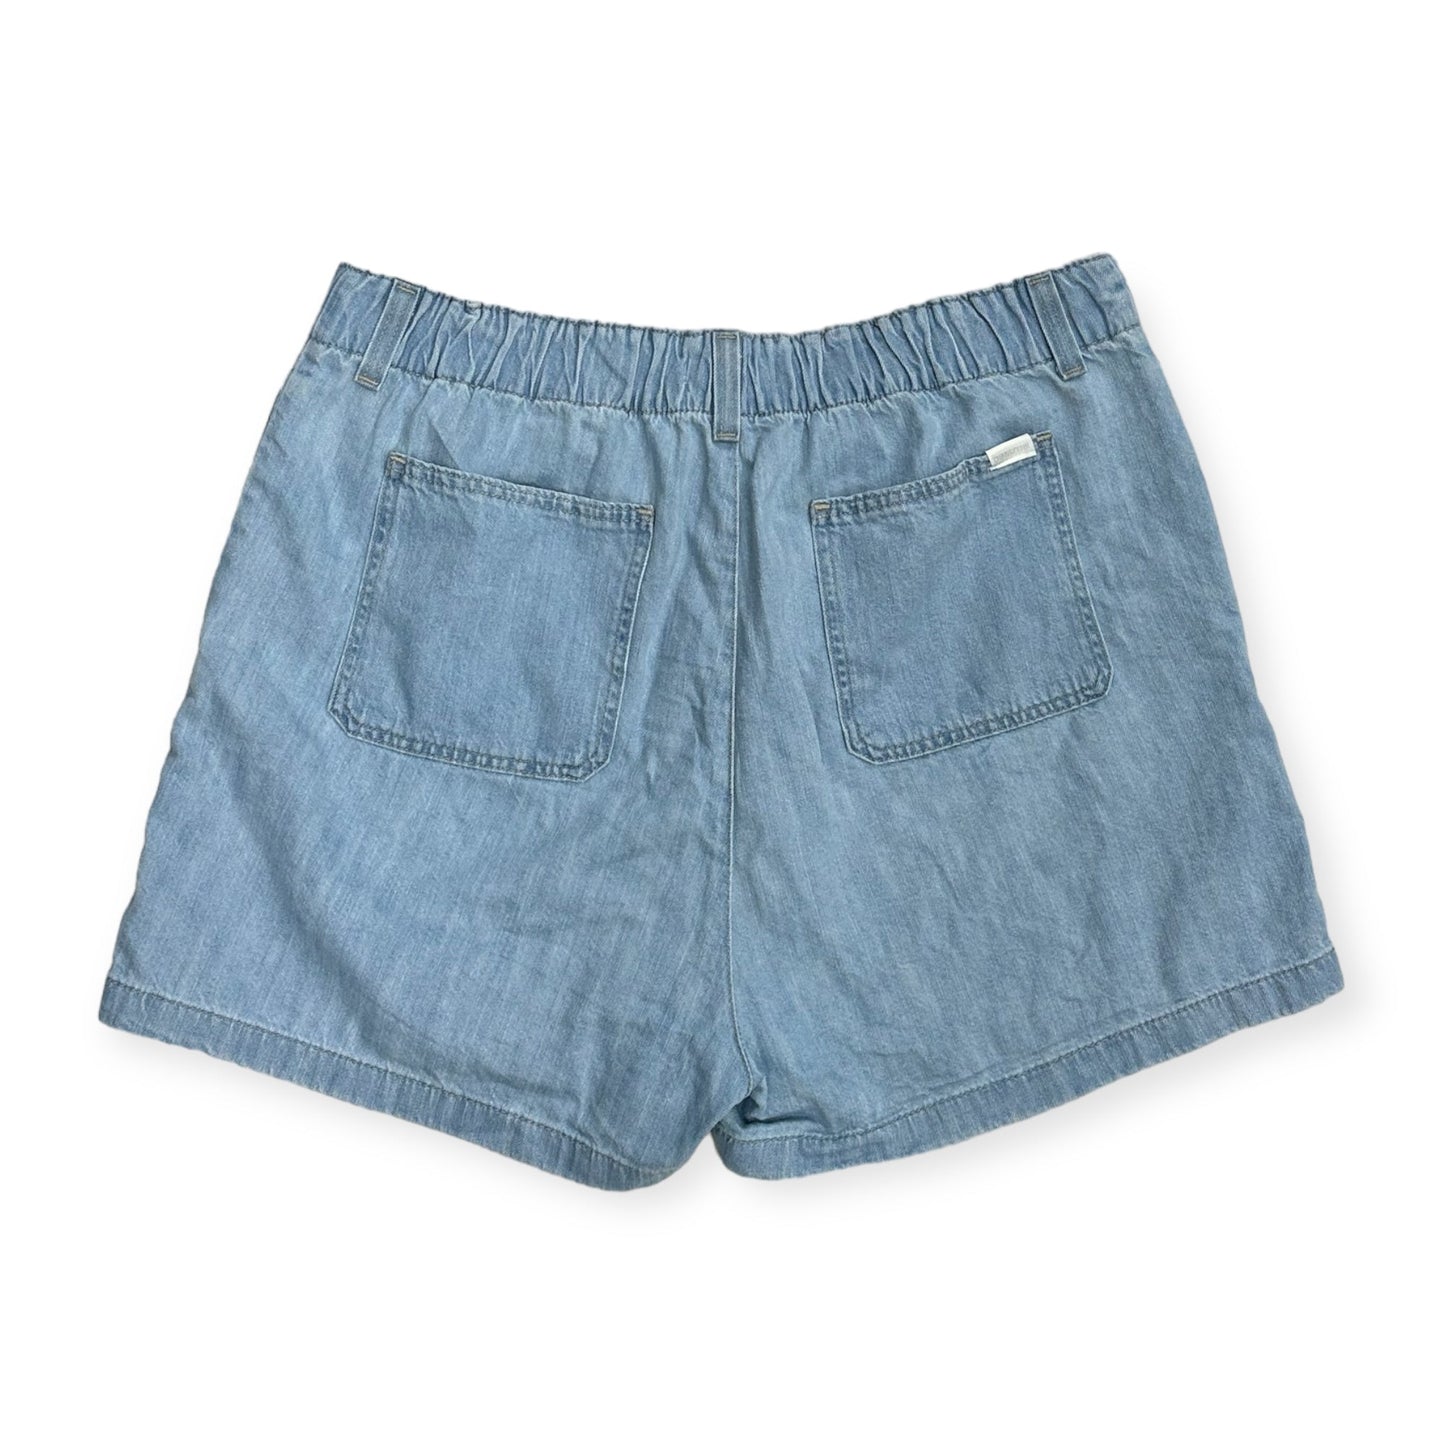 Blue Denim Shorts Levis, Size 16